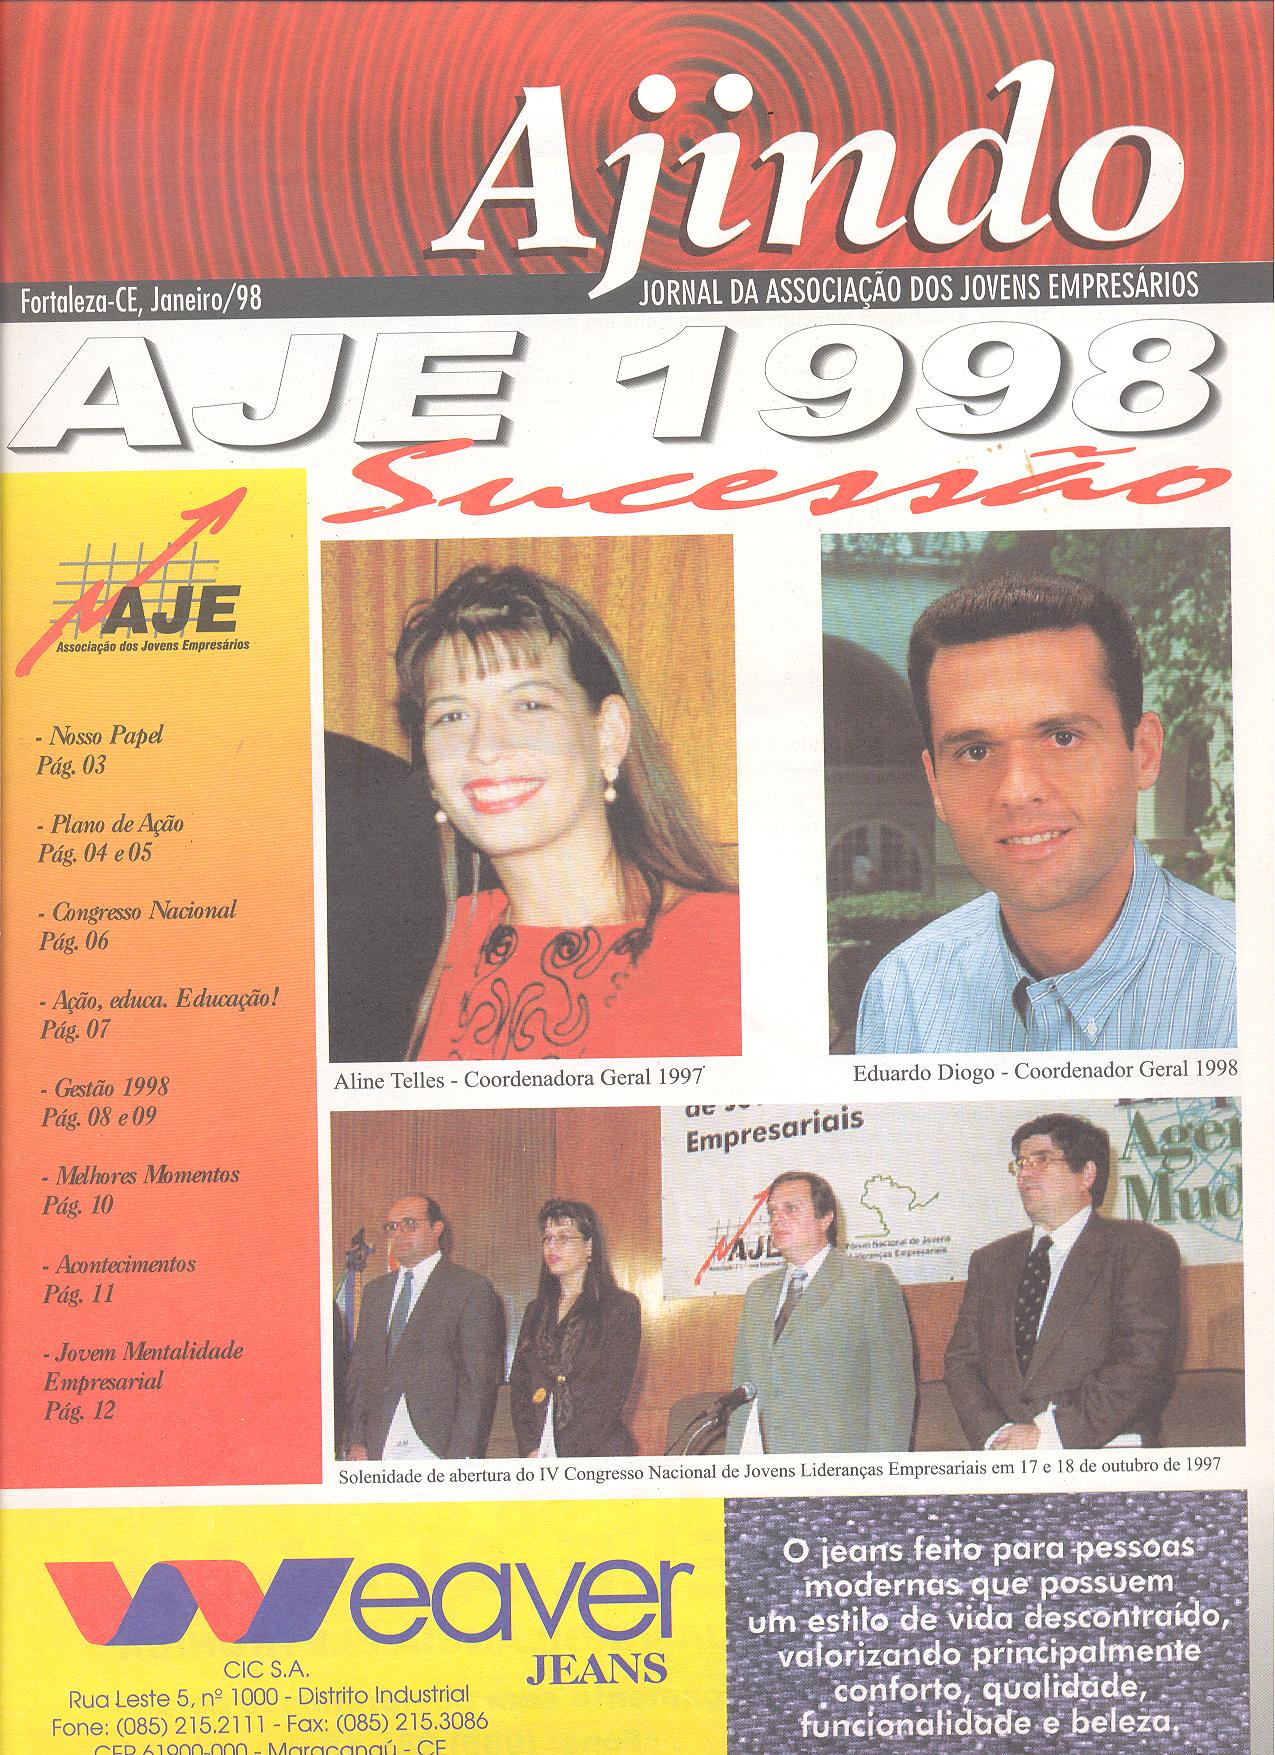 Informativo Ajindo da AJE Fortaleza sobre a Sucessão 1998